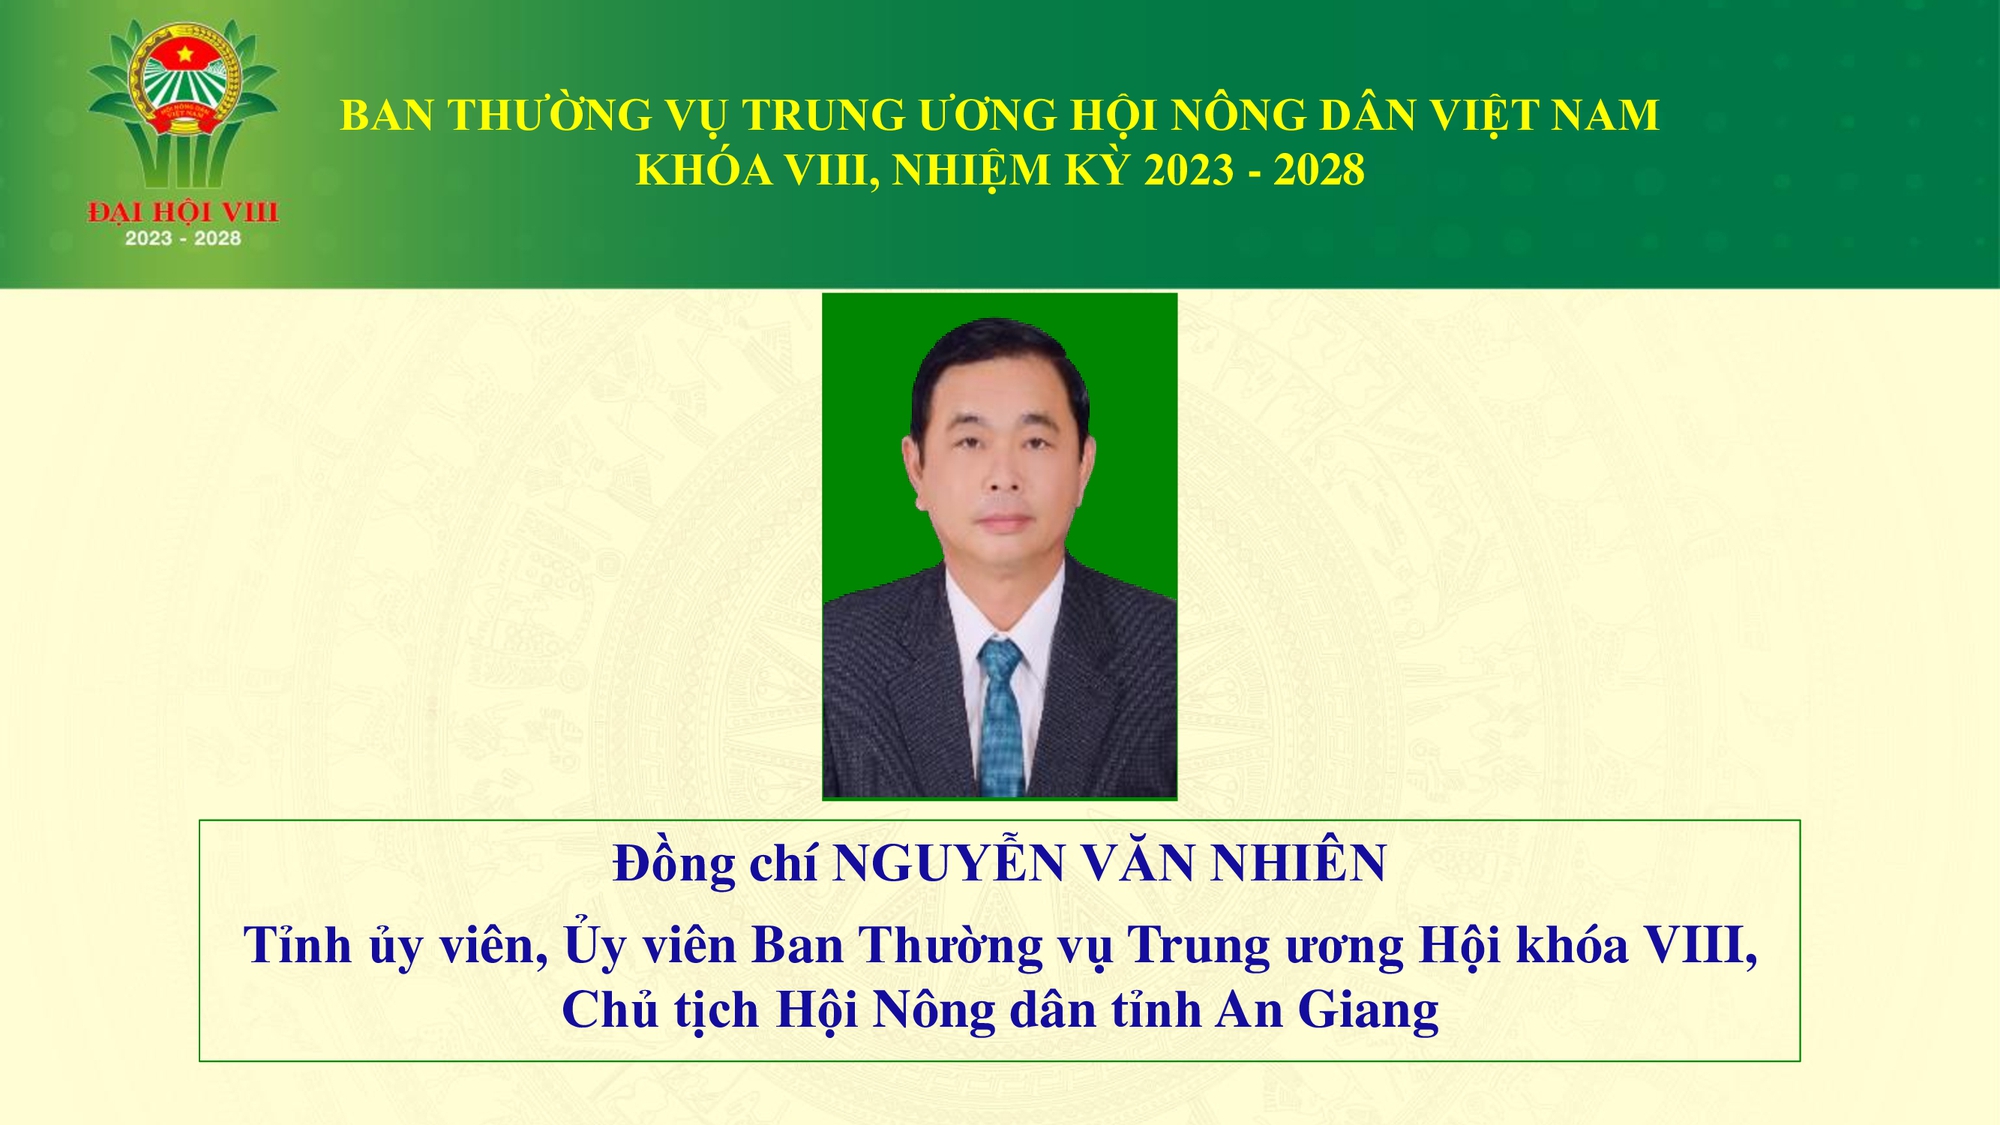 Danh sách 18 đồng chí tham gia Ban Thường vụ Trung ương Hội Nông dân Việt Nam - Ảnh 18.